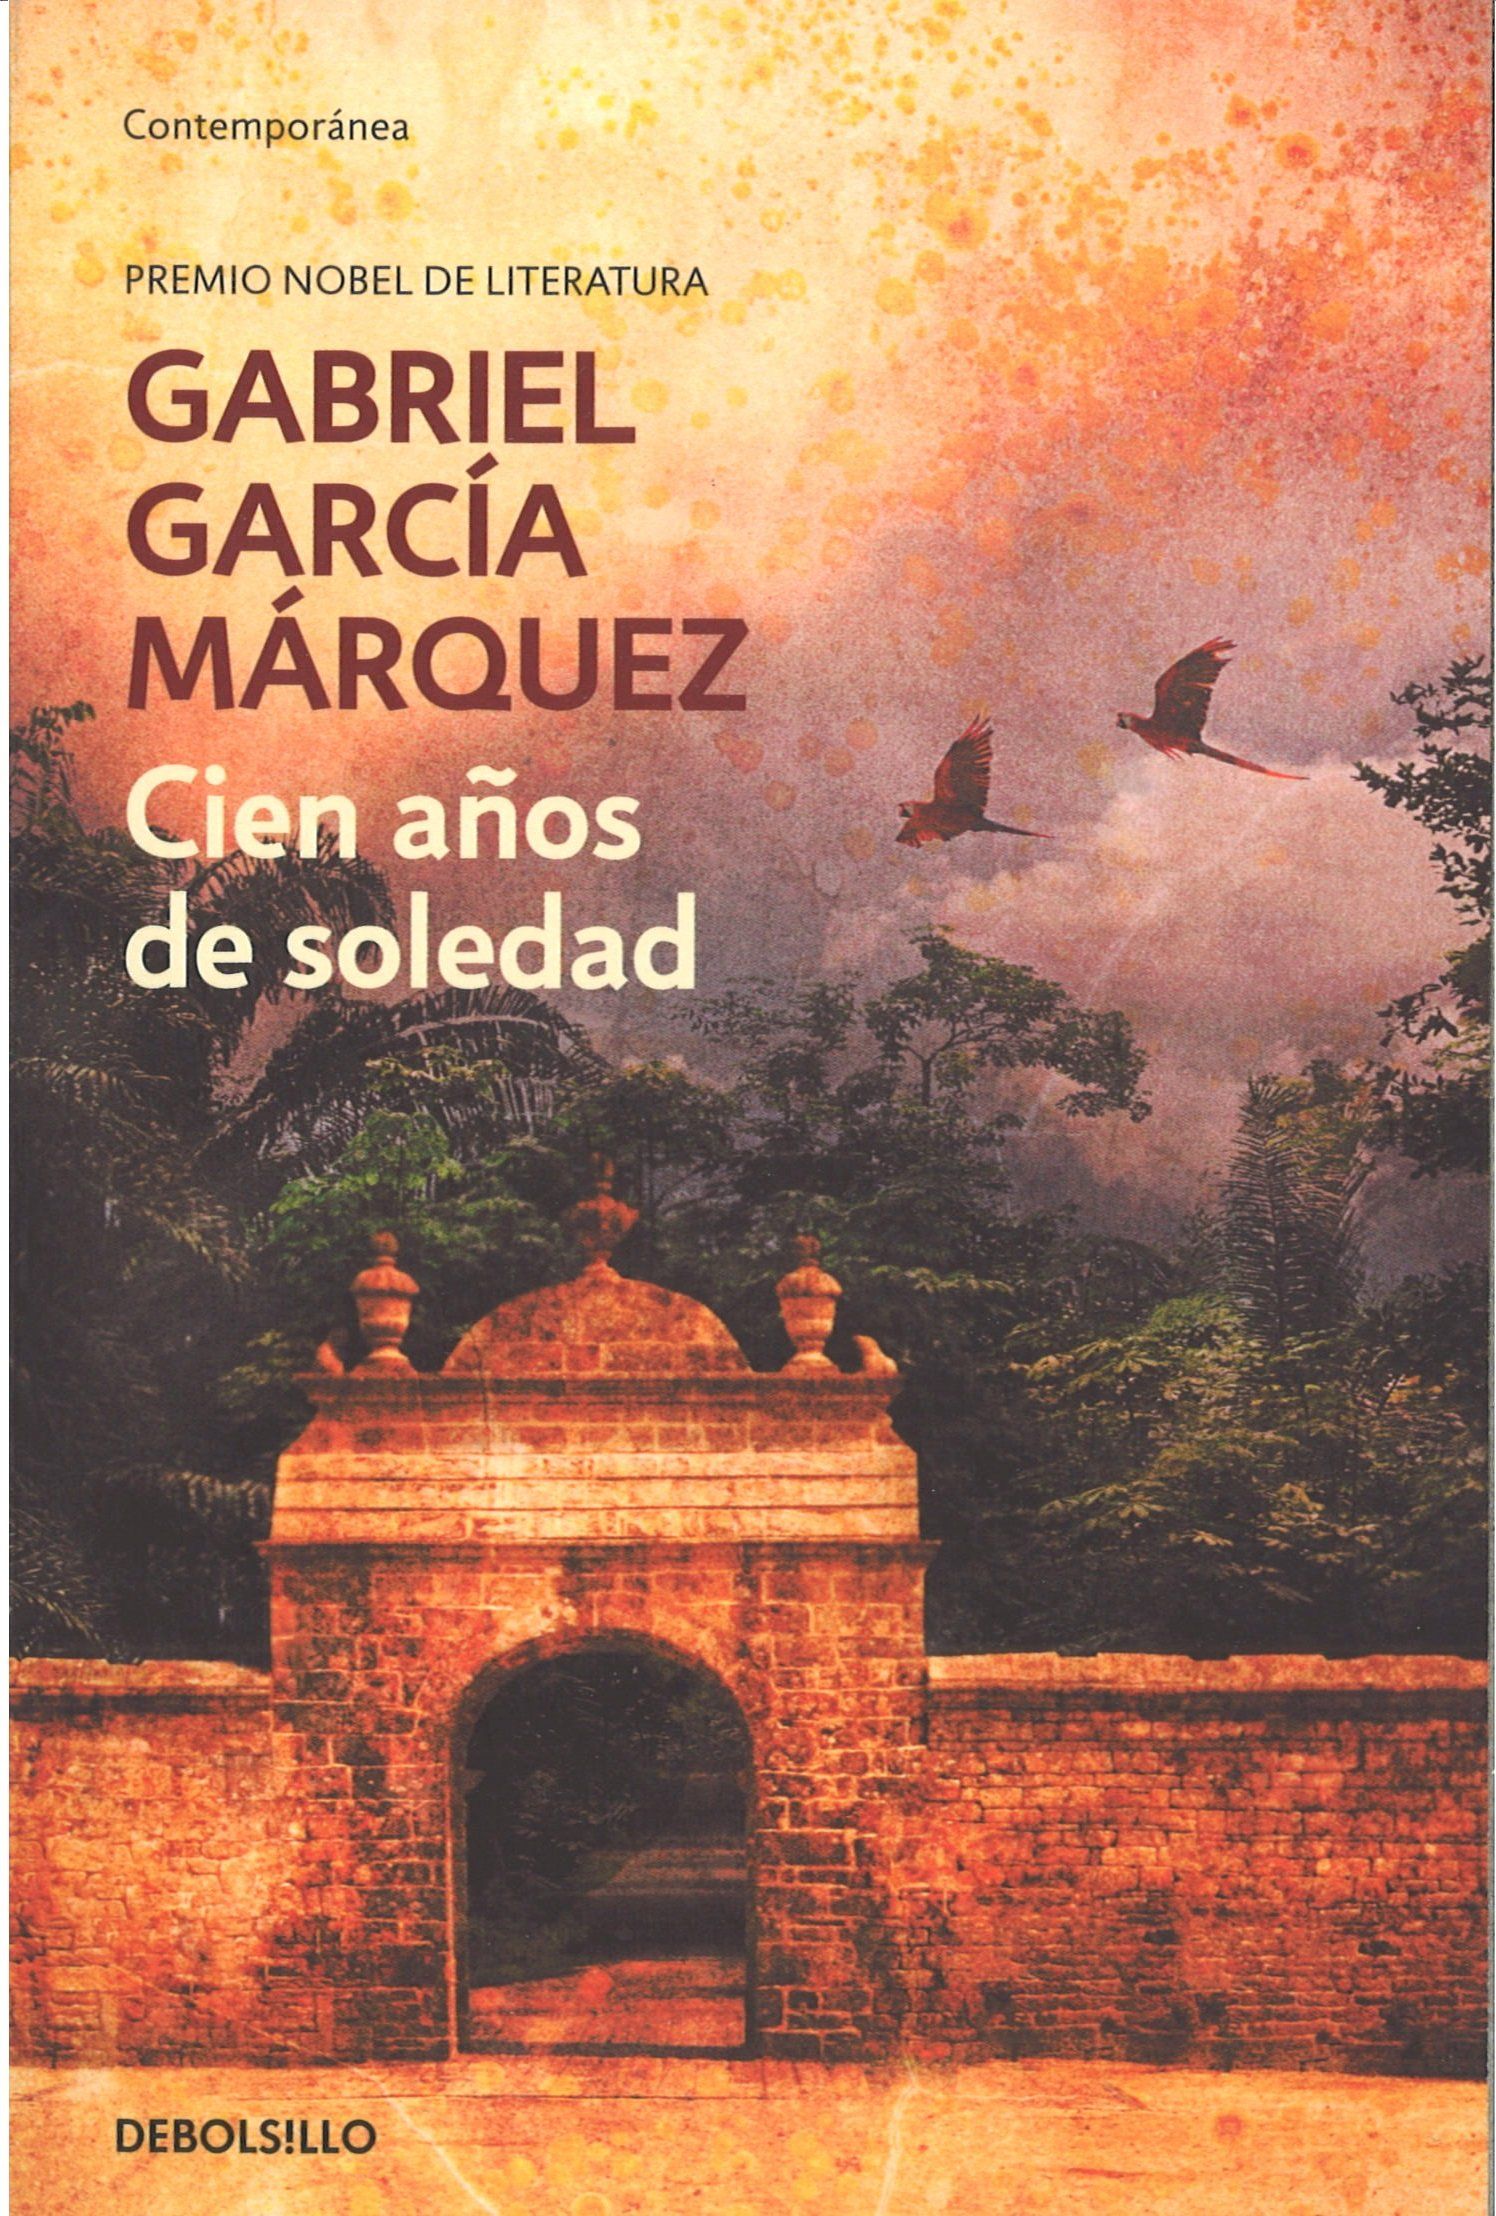 los mejores libros en espanol